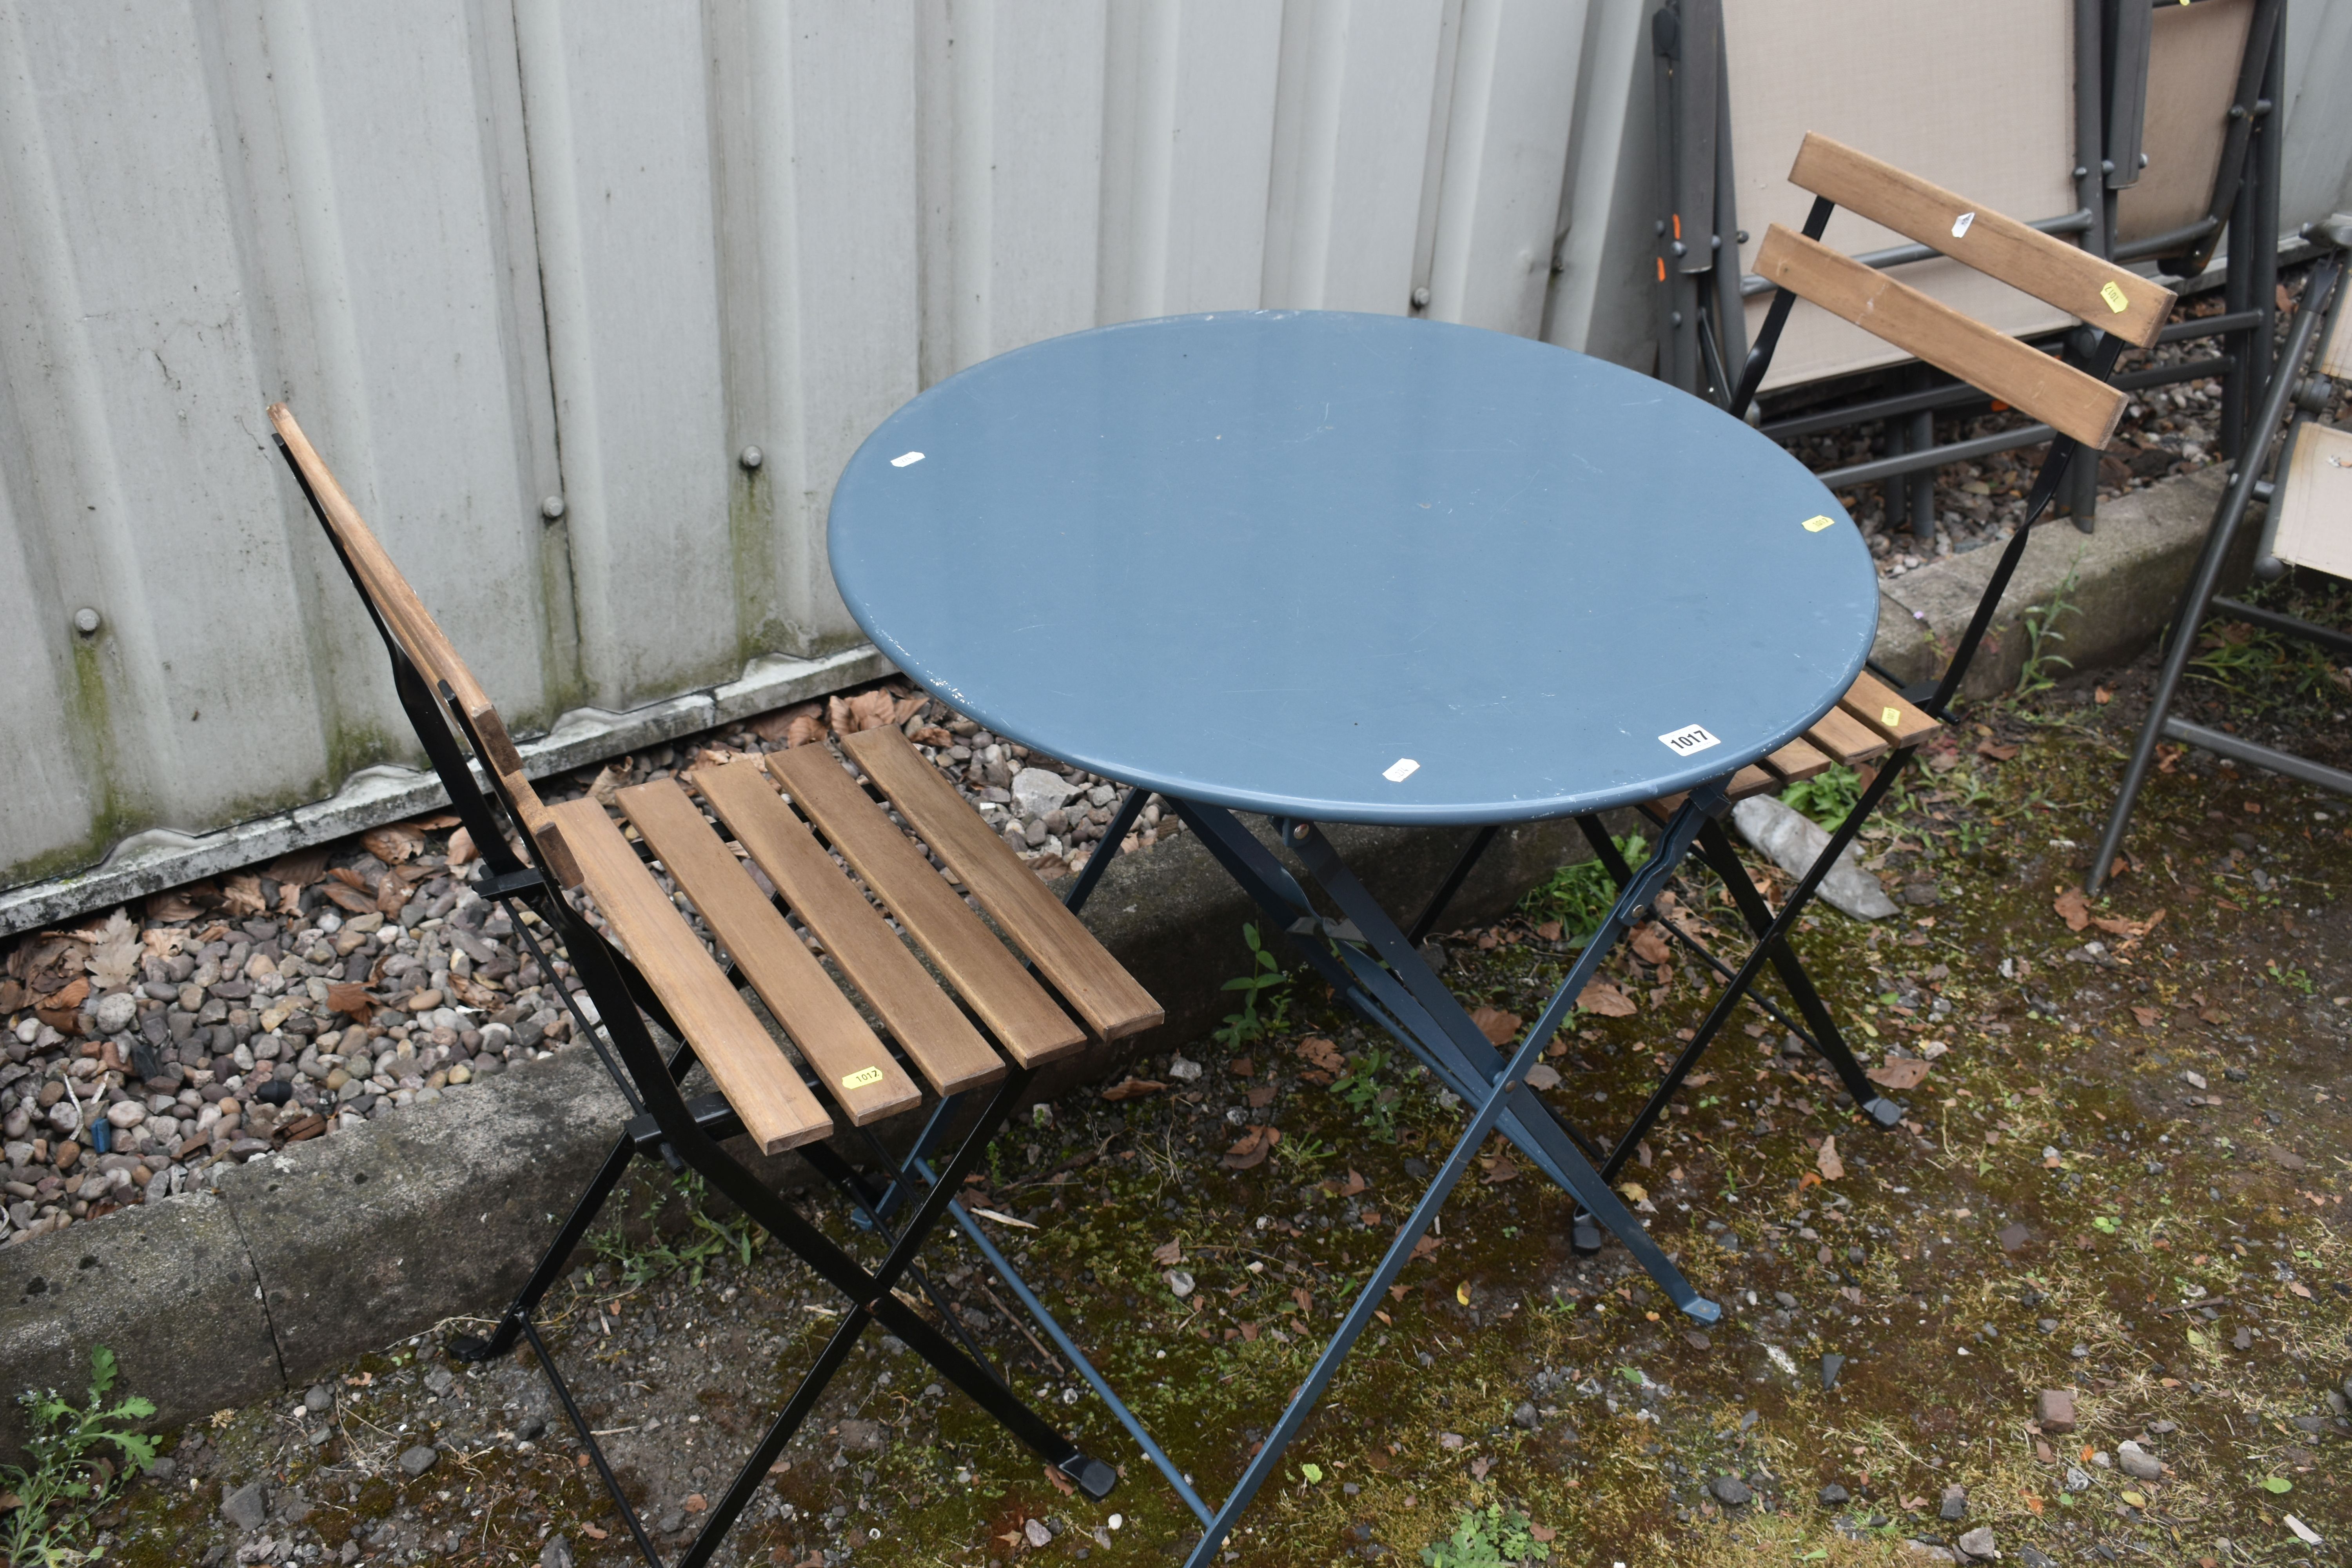 THREE FOLDING GARDEN ITEMS, to include a blue circular garden table, diameter 70cm x height 70cm,